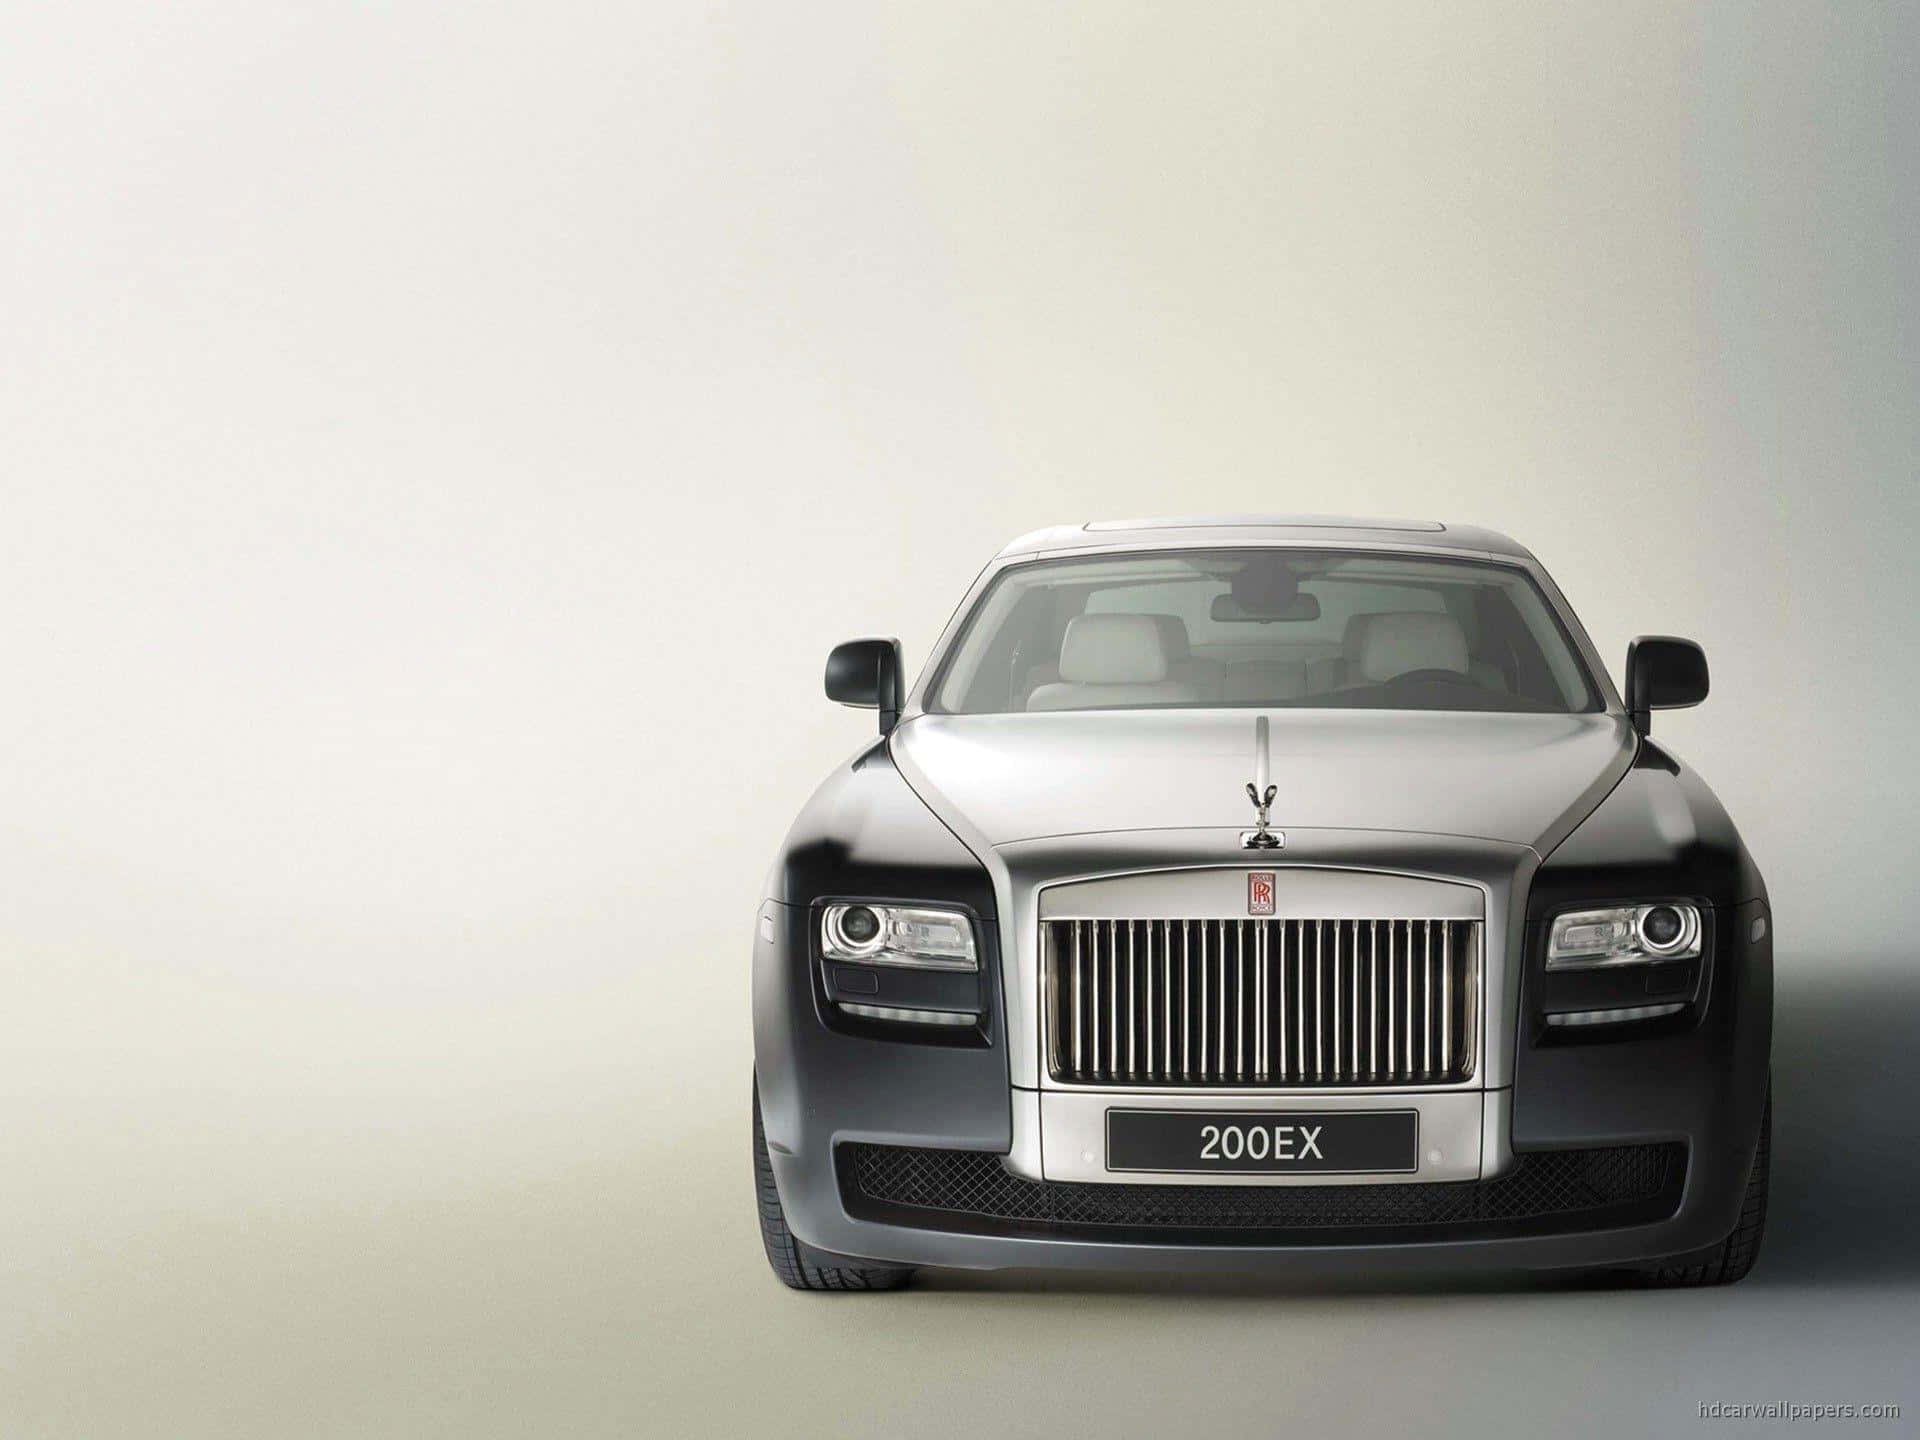 Caption: Elegant Rolls-Royce Luxury Car in a Classic Setting